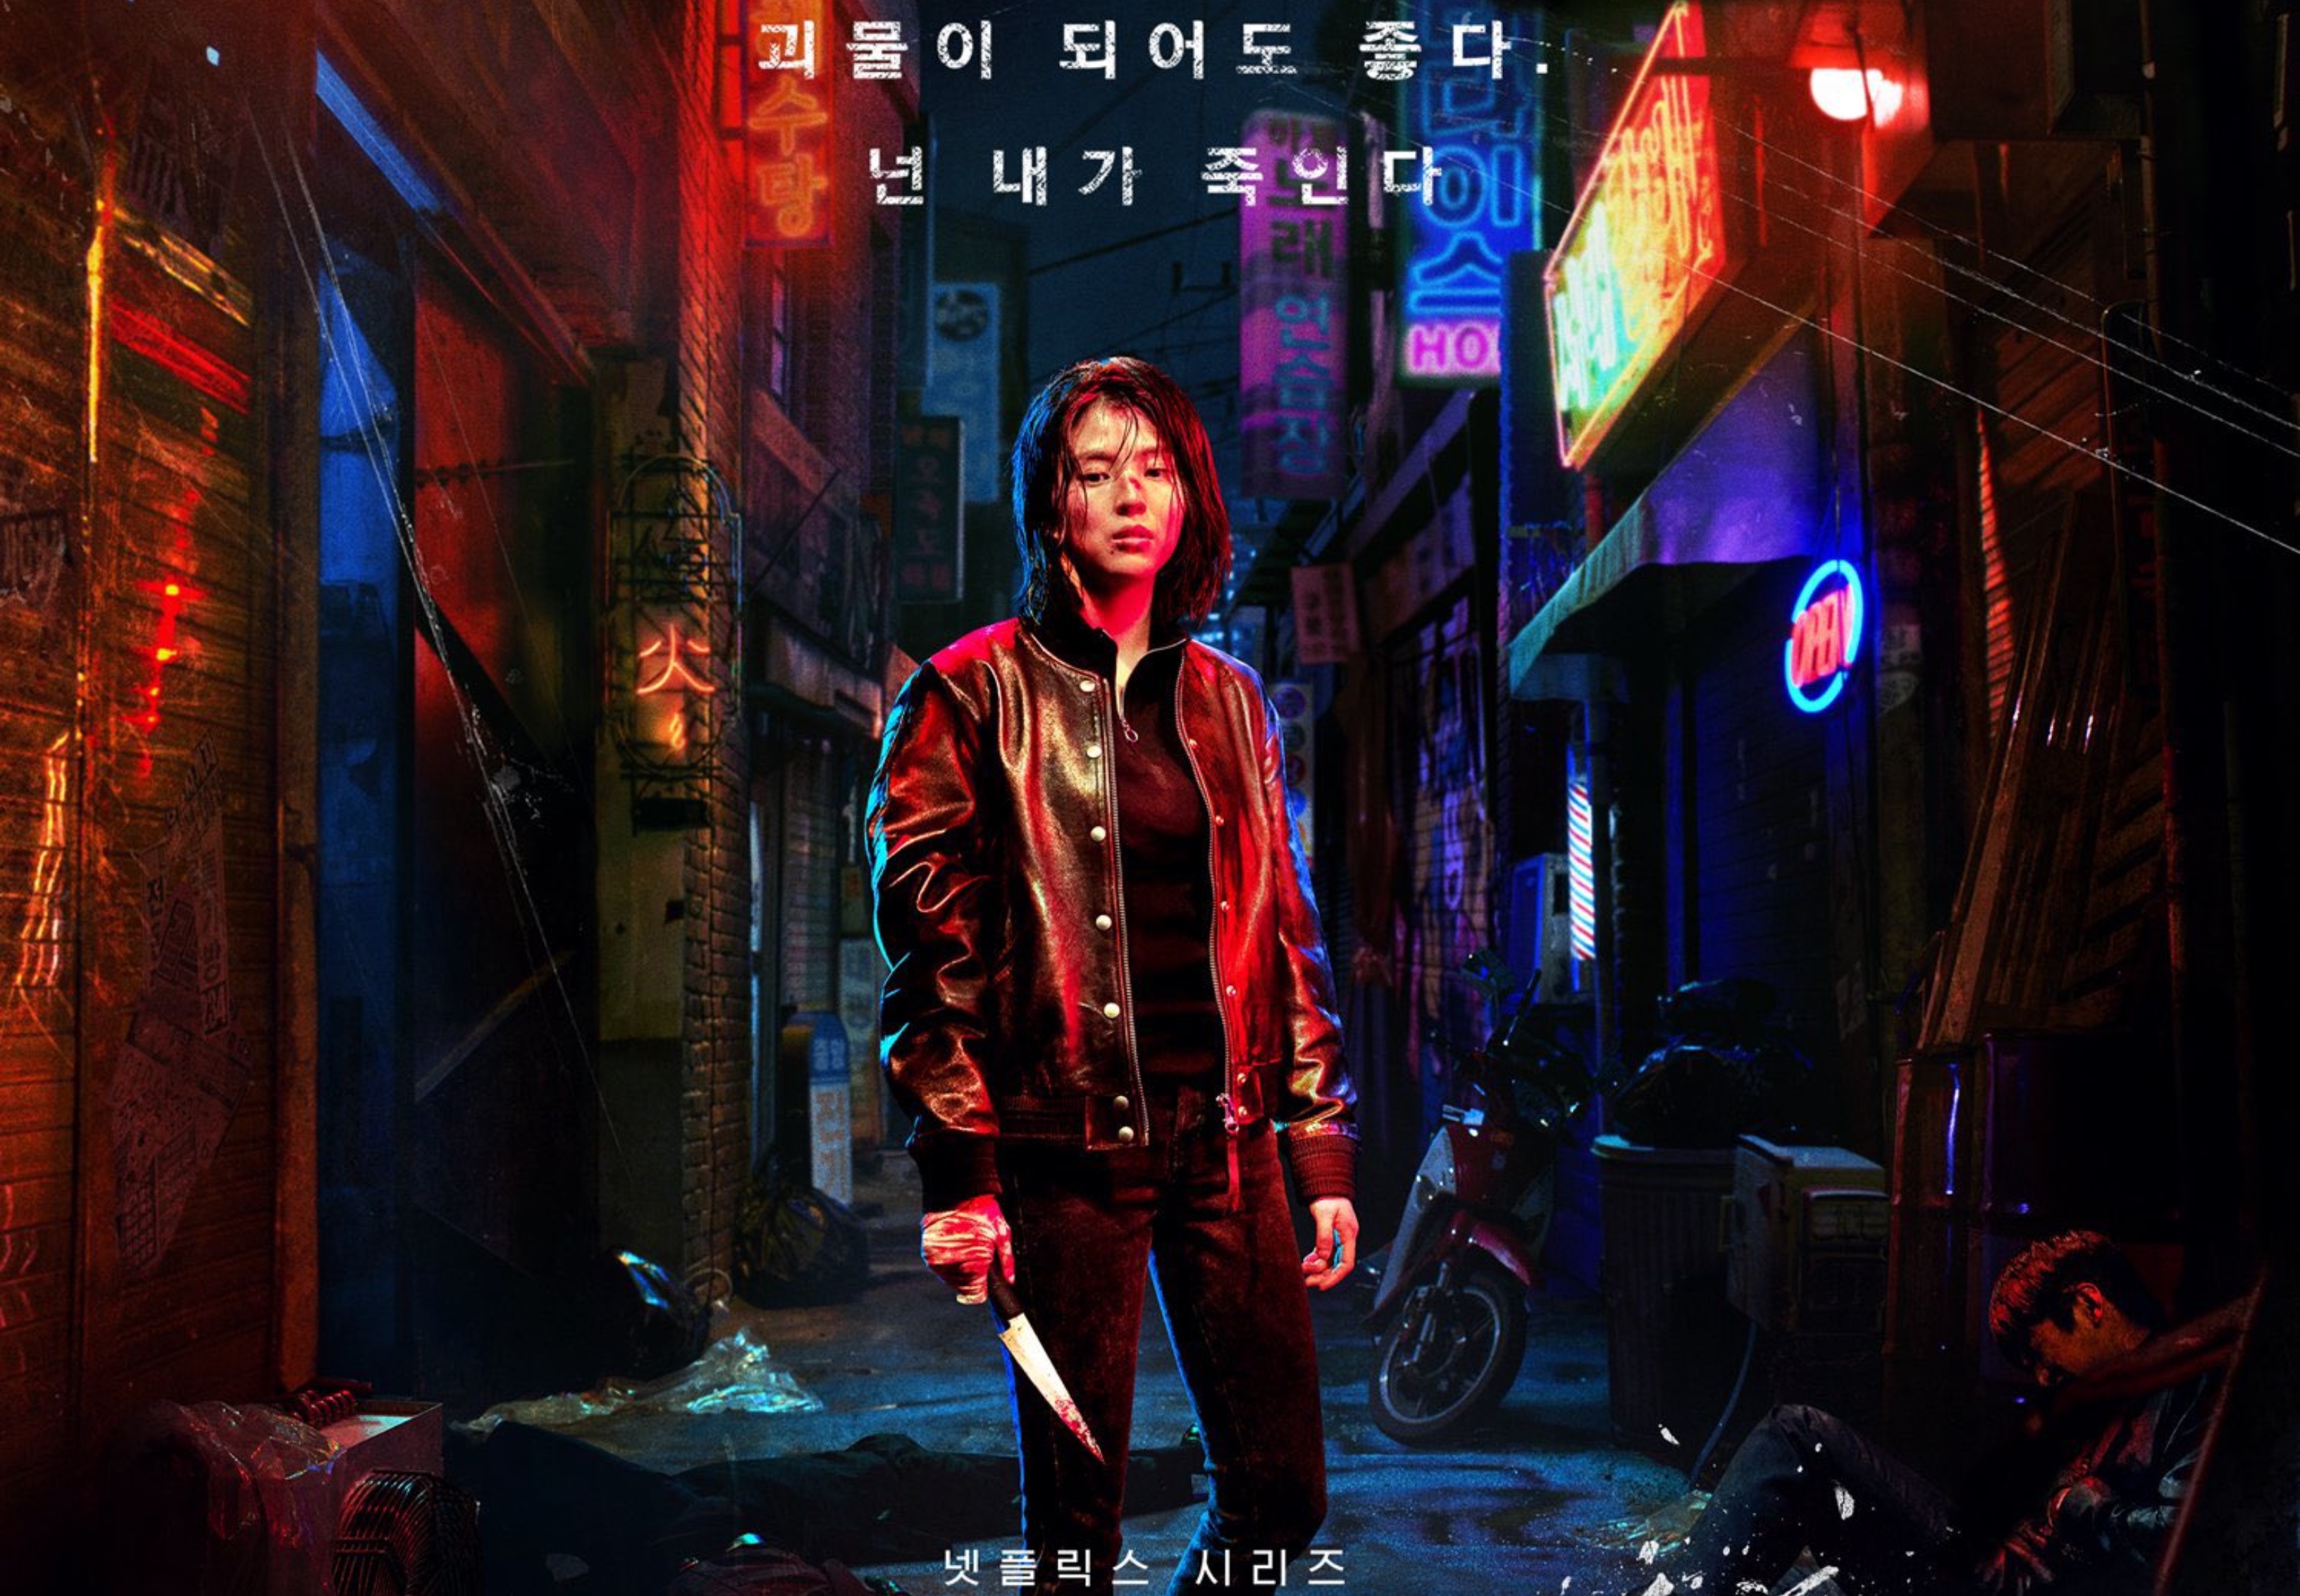 Han So-Hee as Yoon Ji-Woo 'My Name' wearing black bomber and holding knife in alleyway